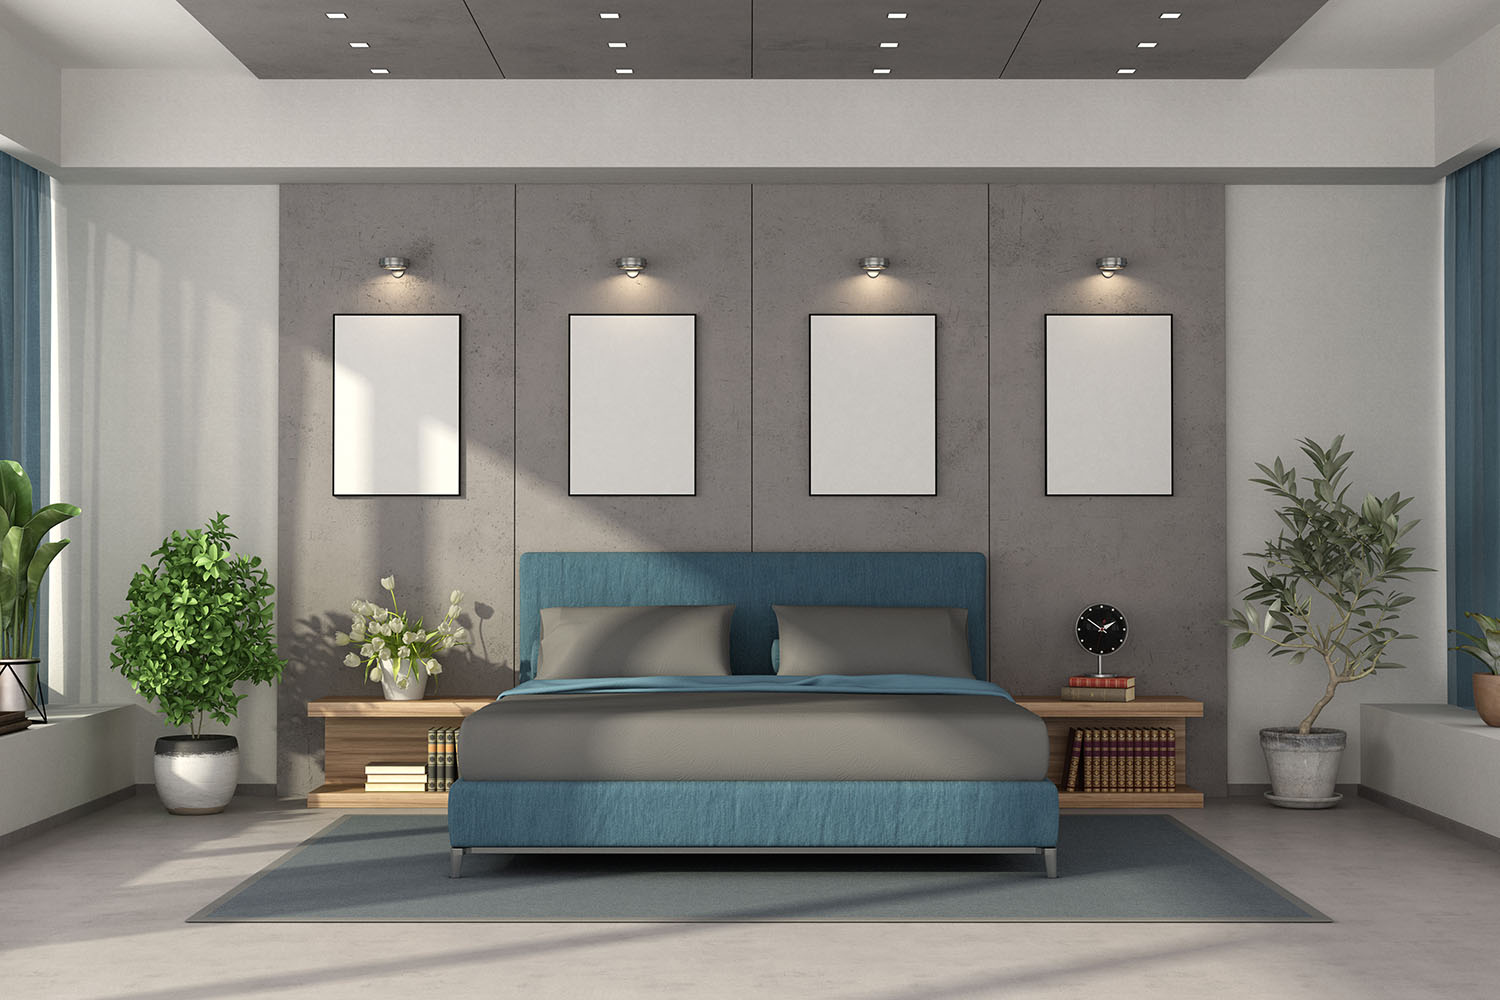 Modern master bedroom with spotlights